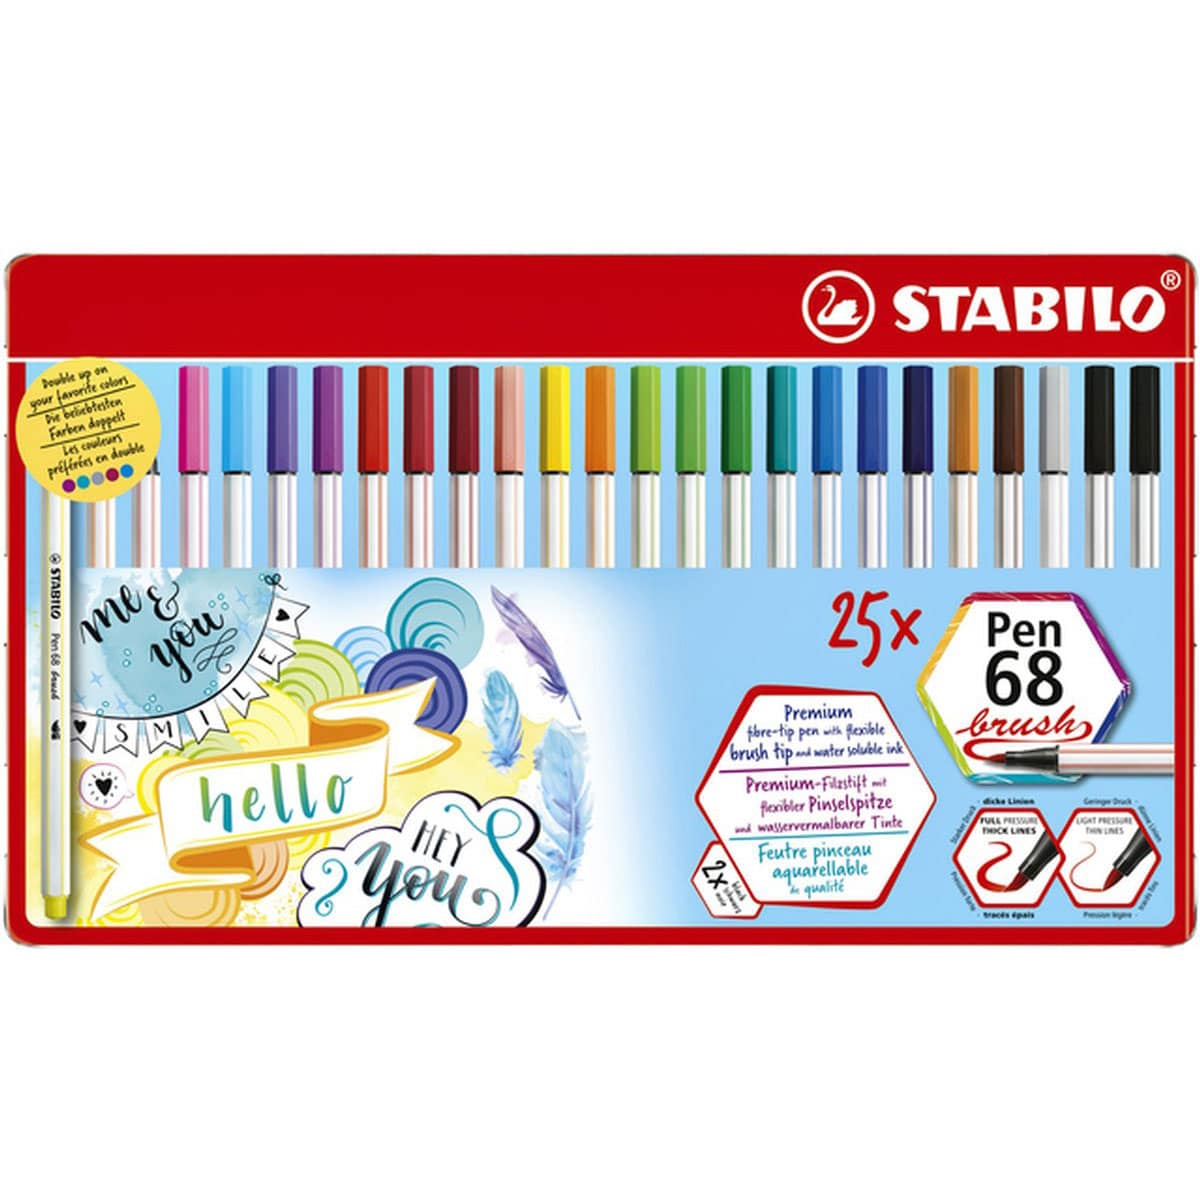 Ensemble de 25 pinceaux STABILO Pen 68 - Suitup - Art Supplies